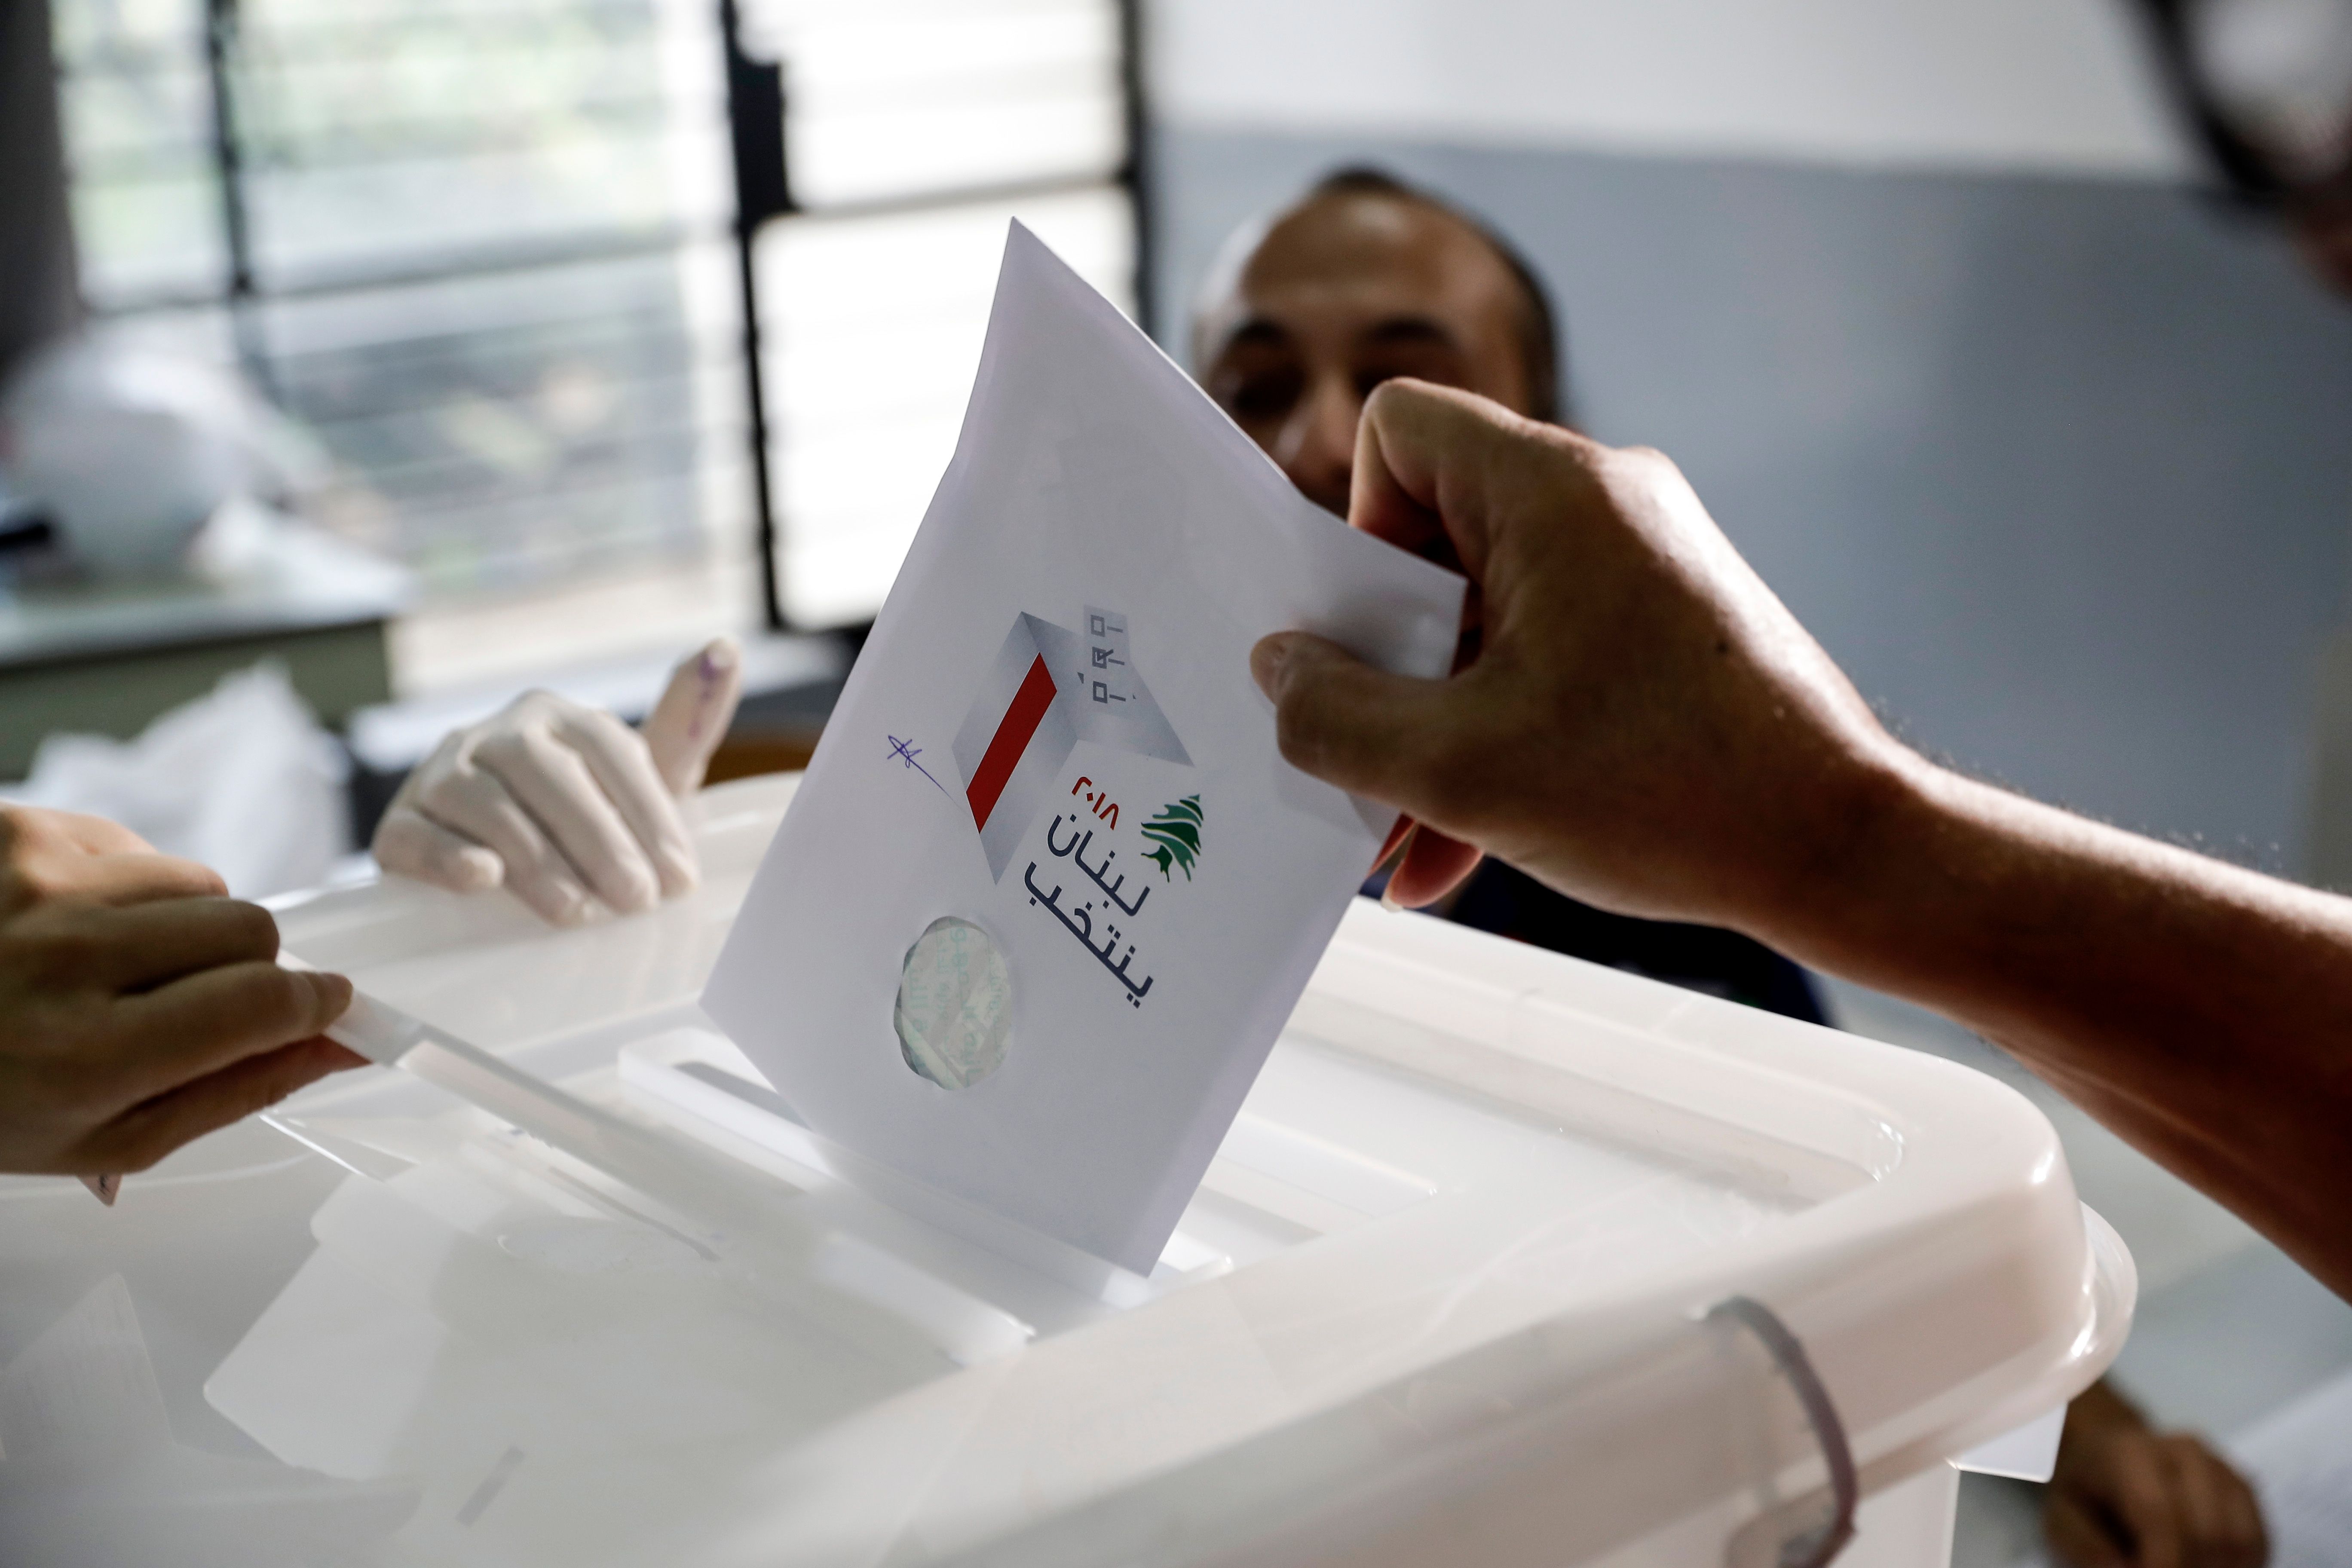 الانتخابات اللبنانية 